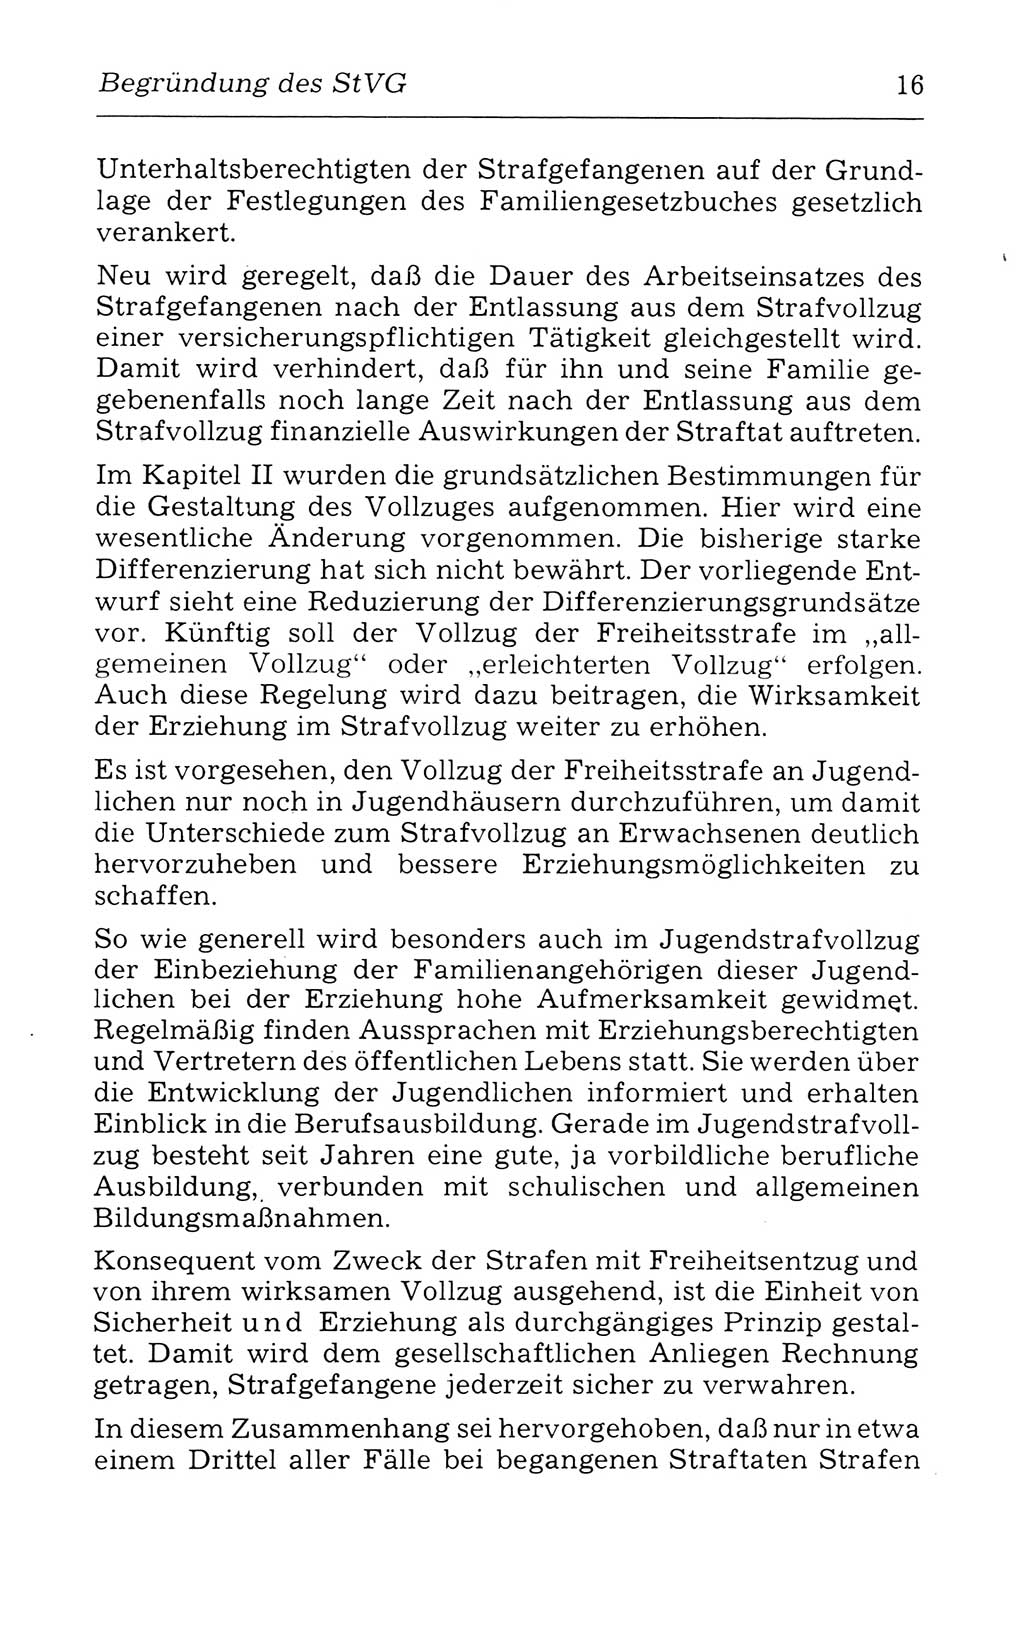 Kommentar zum Strafvollzugsgesetz [(StVG) Deutsche Demokratische Republik (DDR)] 1980, Seite 16 (Komm. StVG DDR 1980, S. 16)